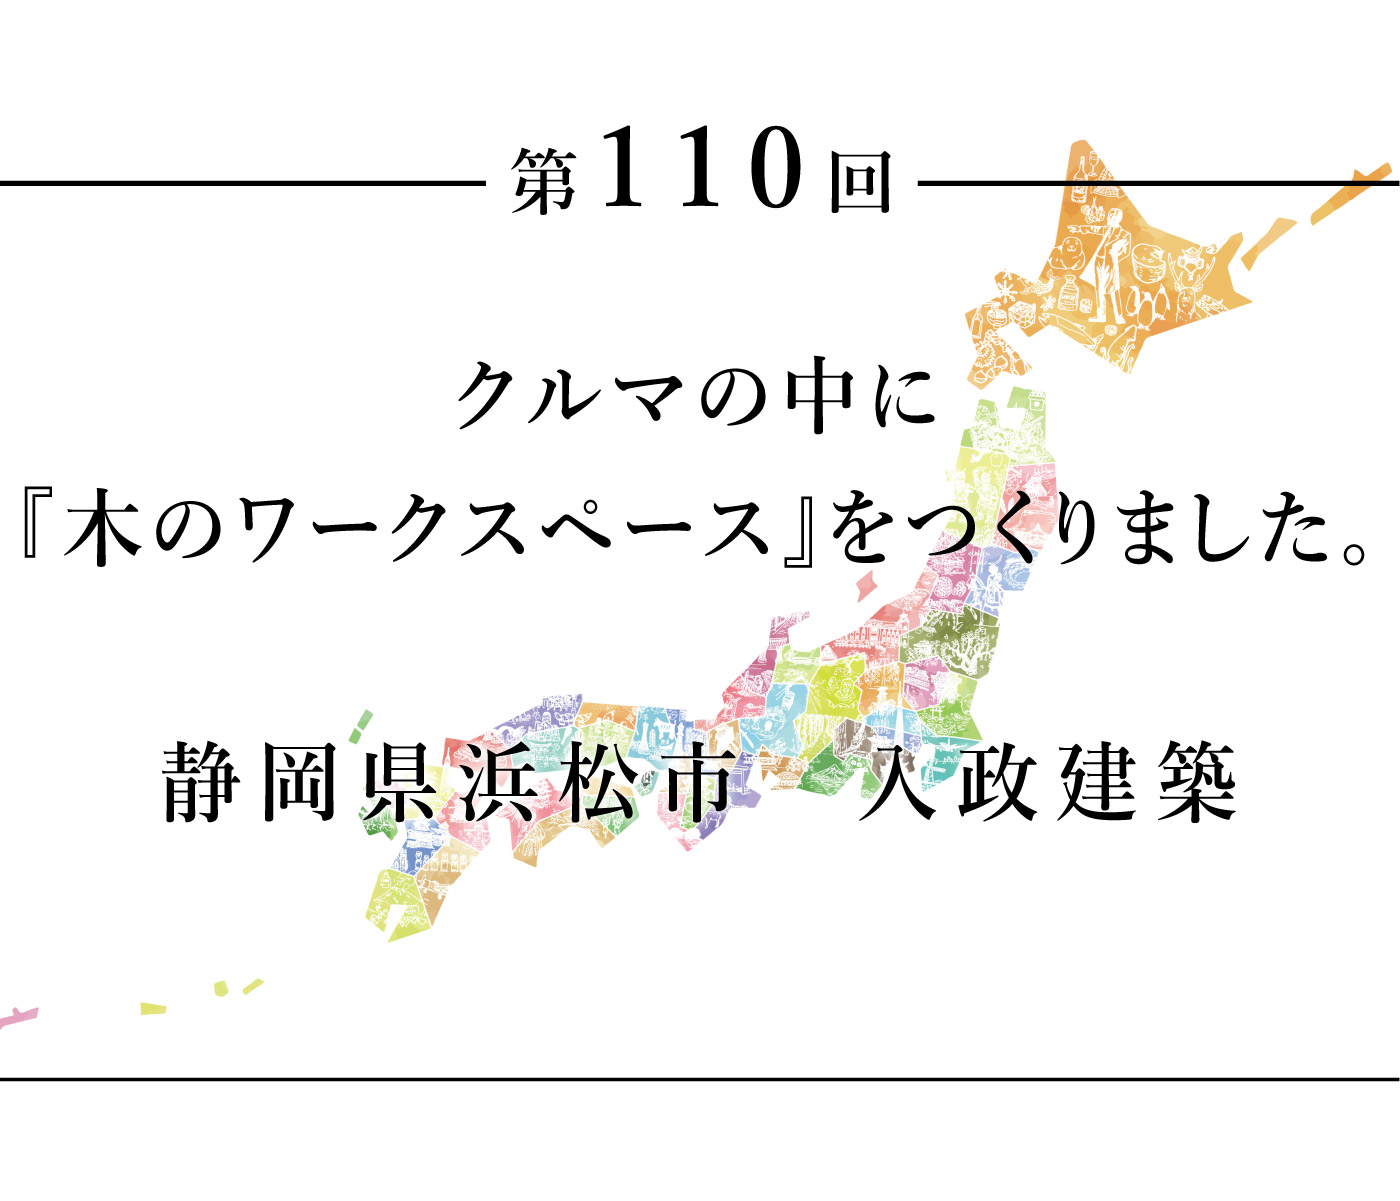 ちいきのたより第110回クルマの中に『木のワークスペース』をつくりました。静岡県浜松市入政建築